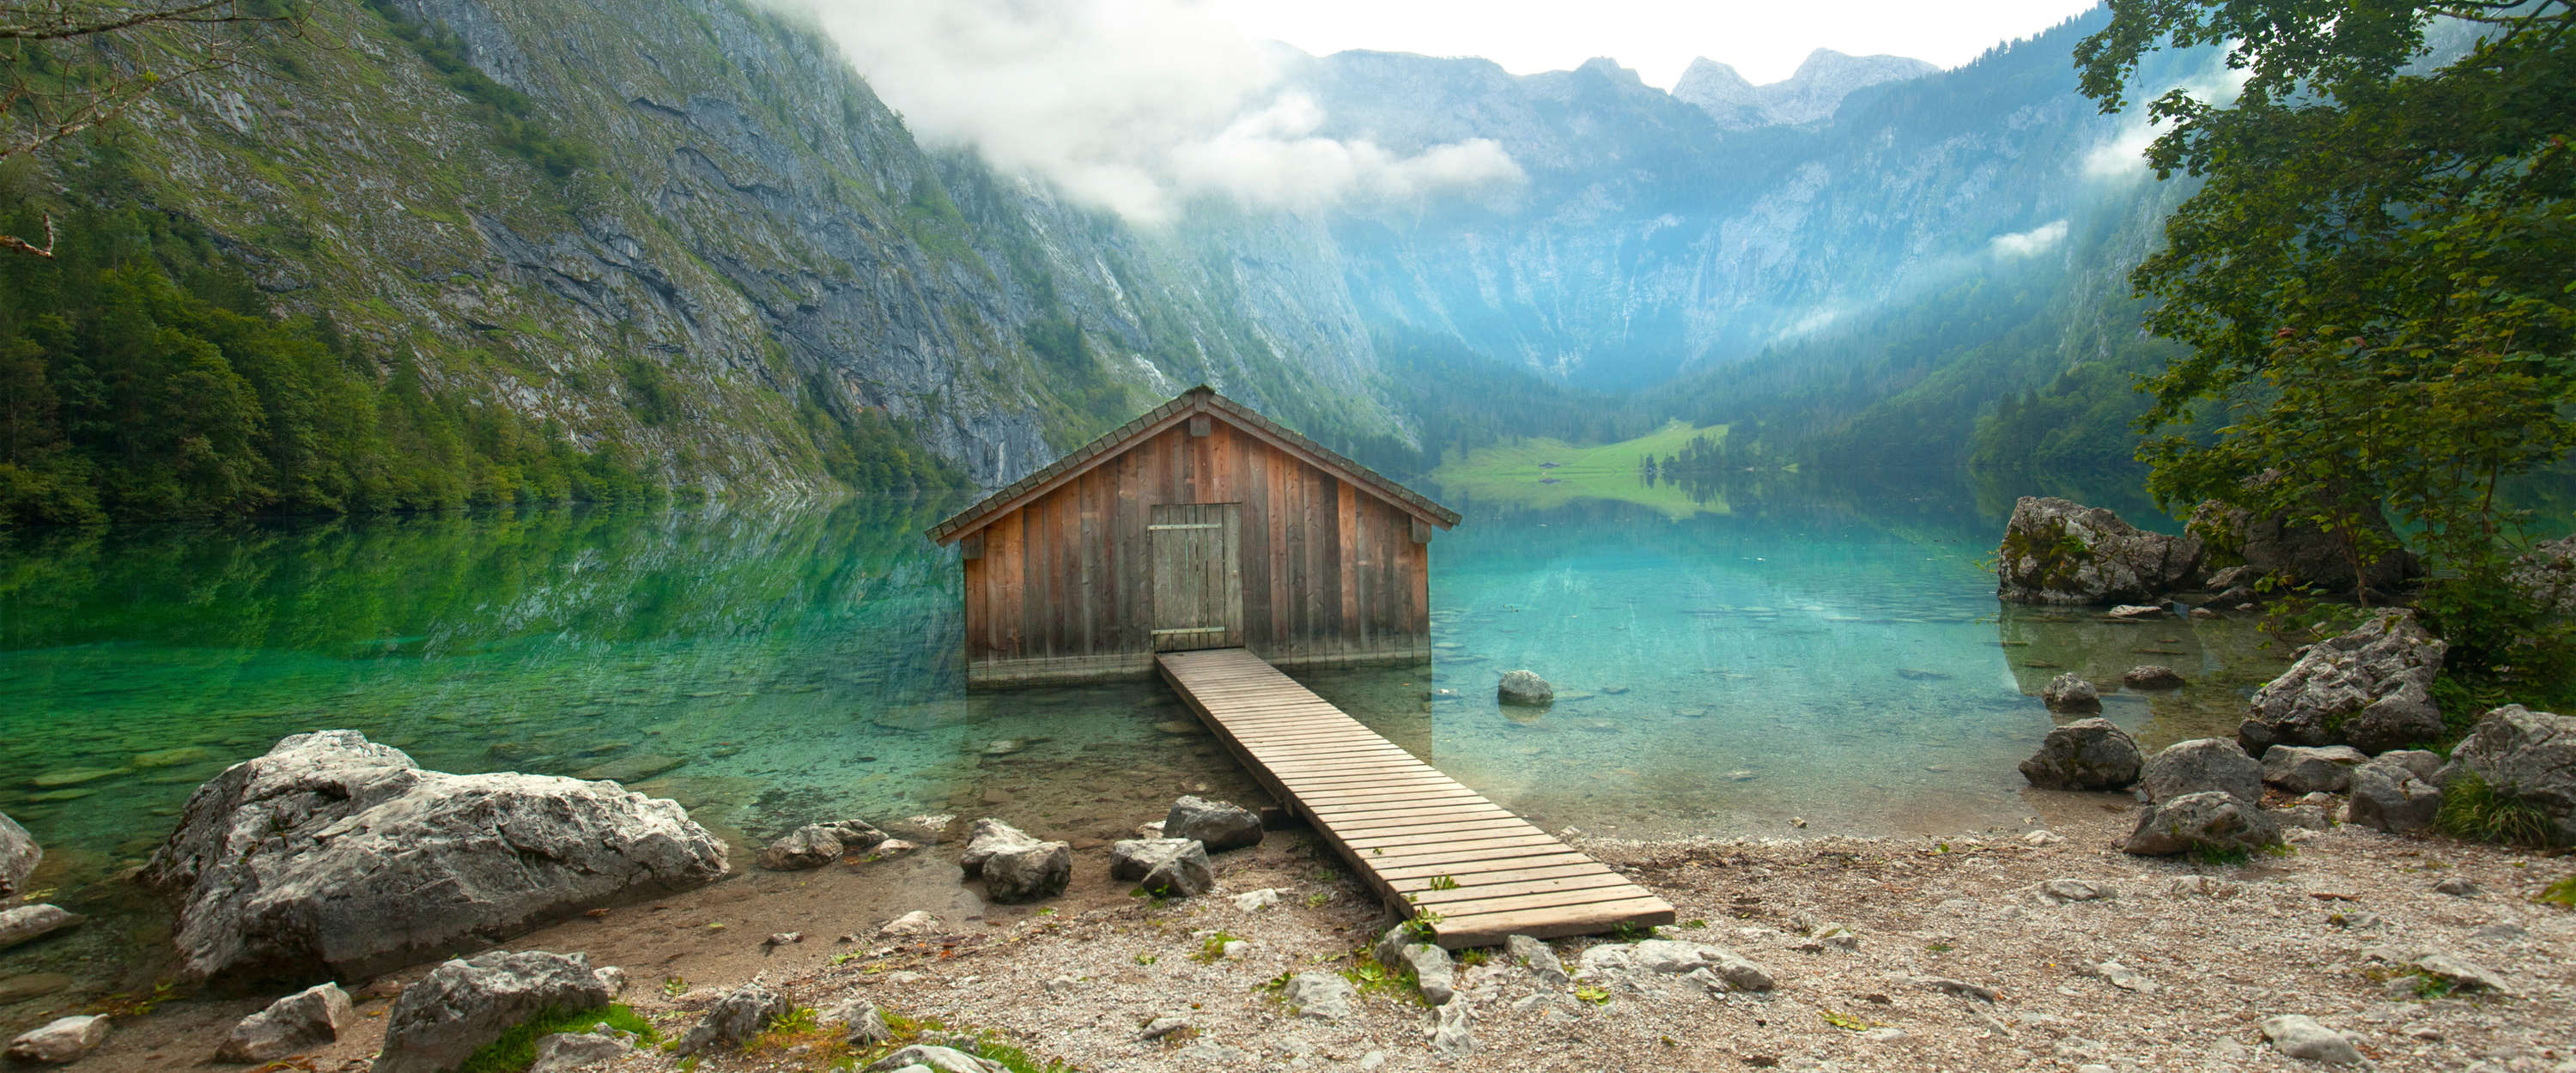             Papel pintado de Refugio de montaña y lago con pasarela de madera y panorama de la cumbre
        